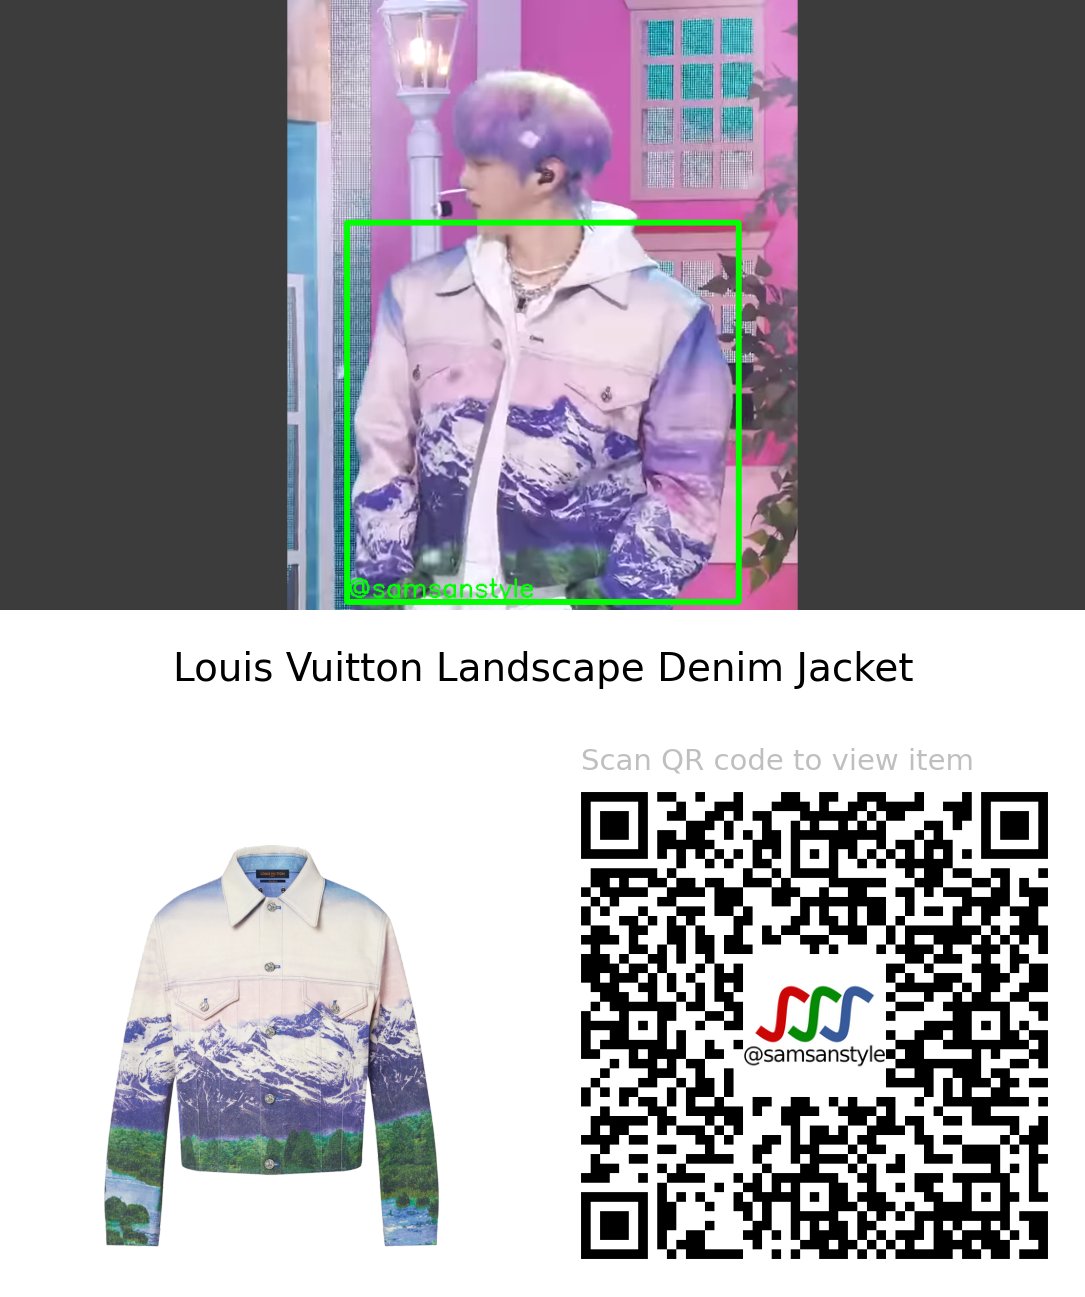 Samsan Style on X: Kang Daniel (강다니엘) wearing a Louis Vuitton